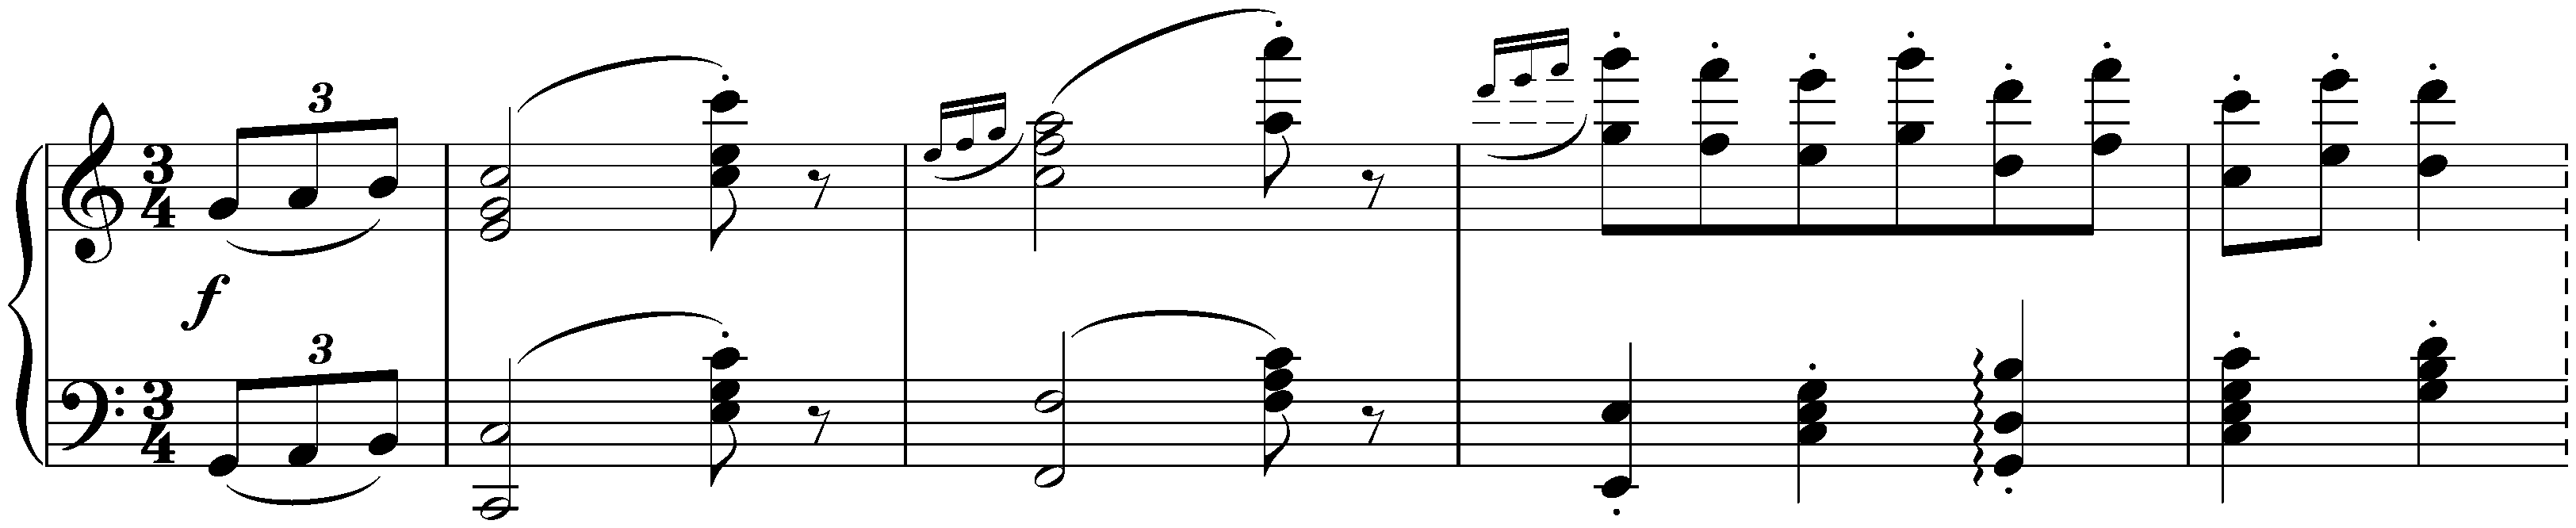 Sixteen Waltzes, op. 39; 13. C major (simplified version)